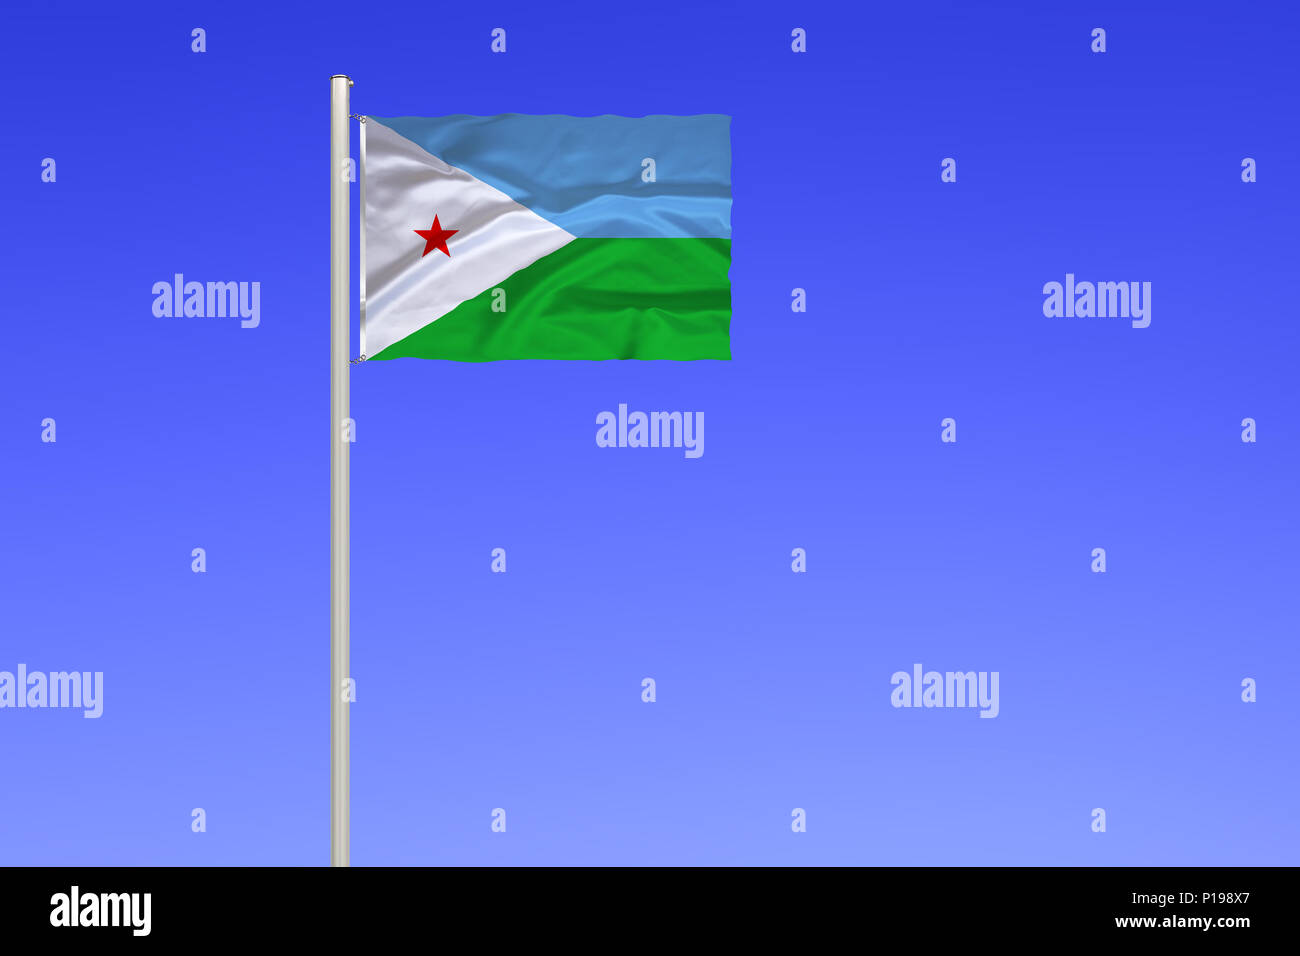 Flag of Djibouti, Republic in East Africa, bordering the Gulf of Aden,, Flagge von Dschibuti, Republik in Ostafrika, grenzt an den Golf von Aden, Stock Photo